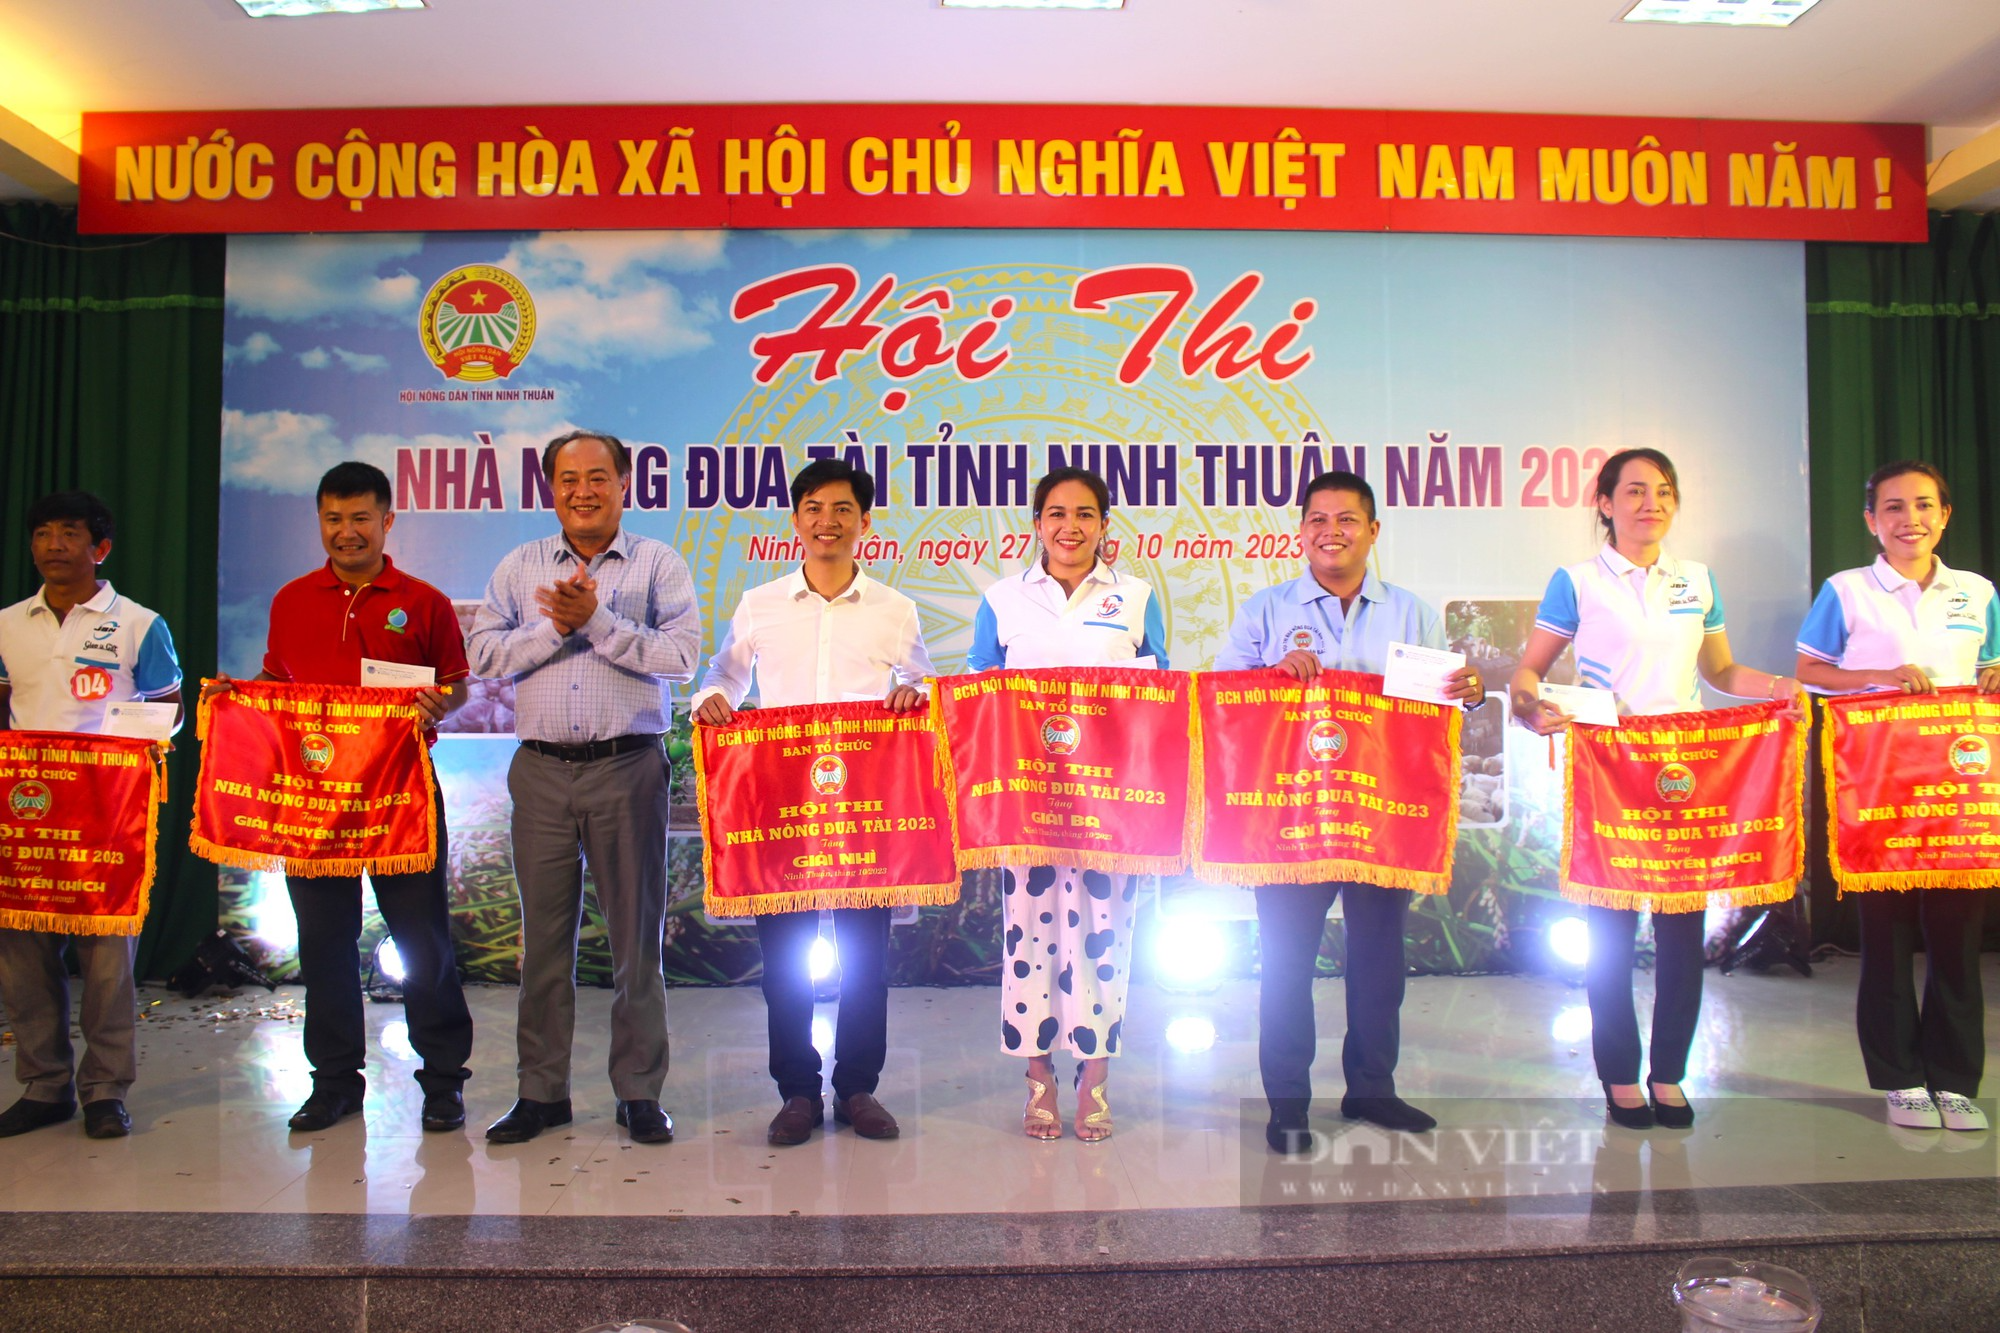 Nông dân Ninh Thuận trổ tài tại hội thi nhà nông đua tài năm 2023 - Ảnh 5.